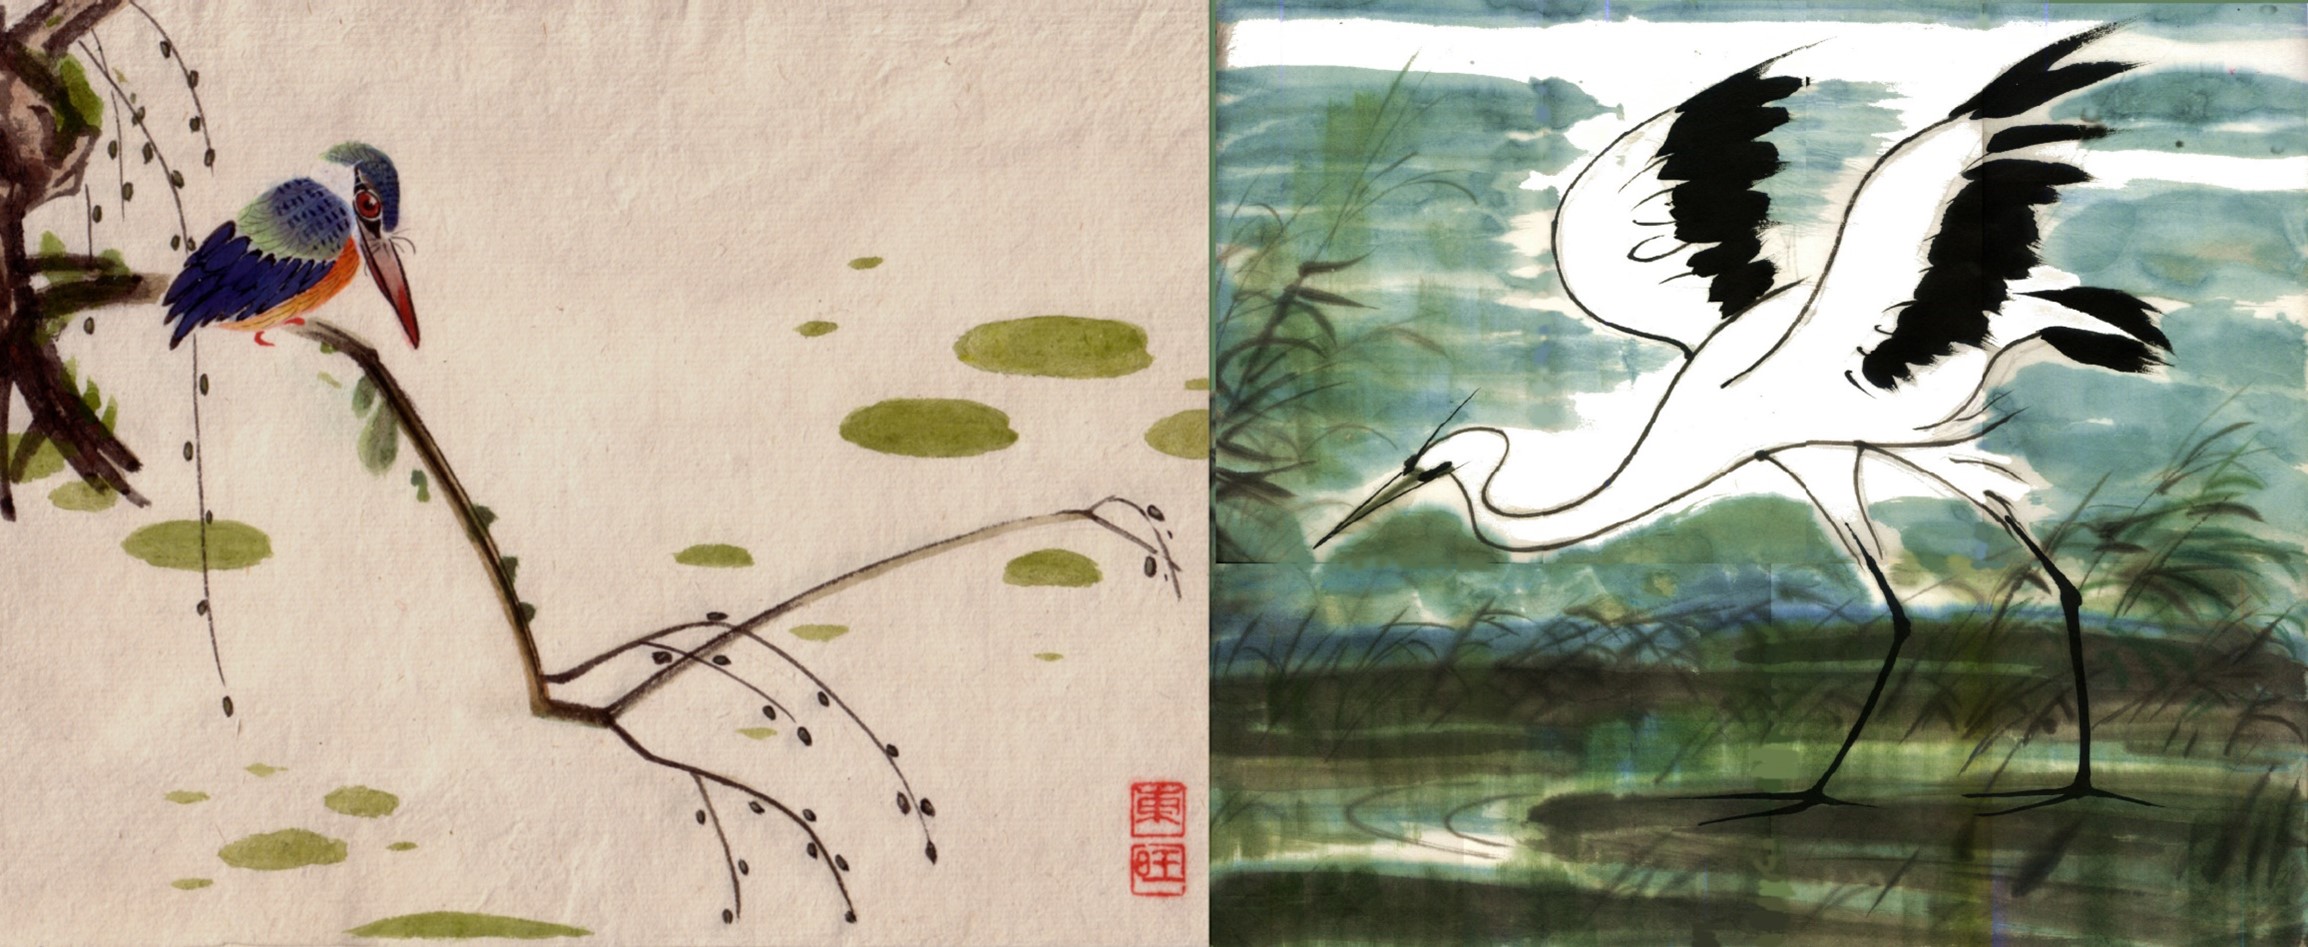 Two paintings of birds in wetlands